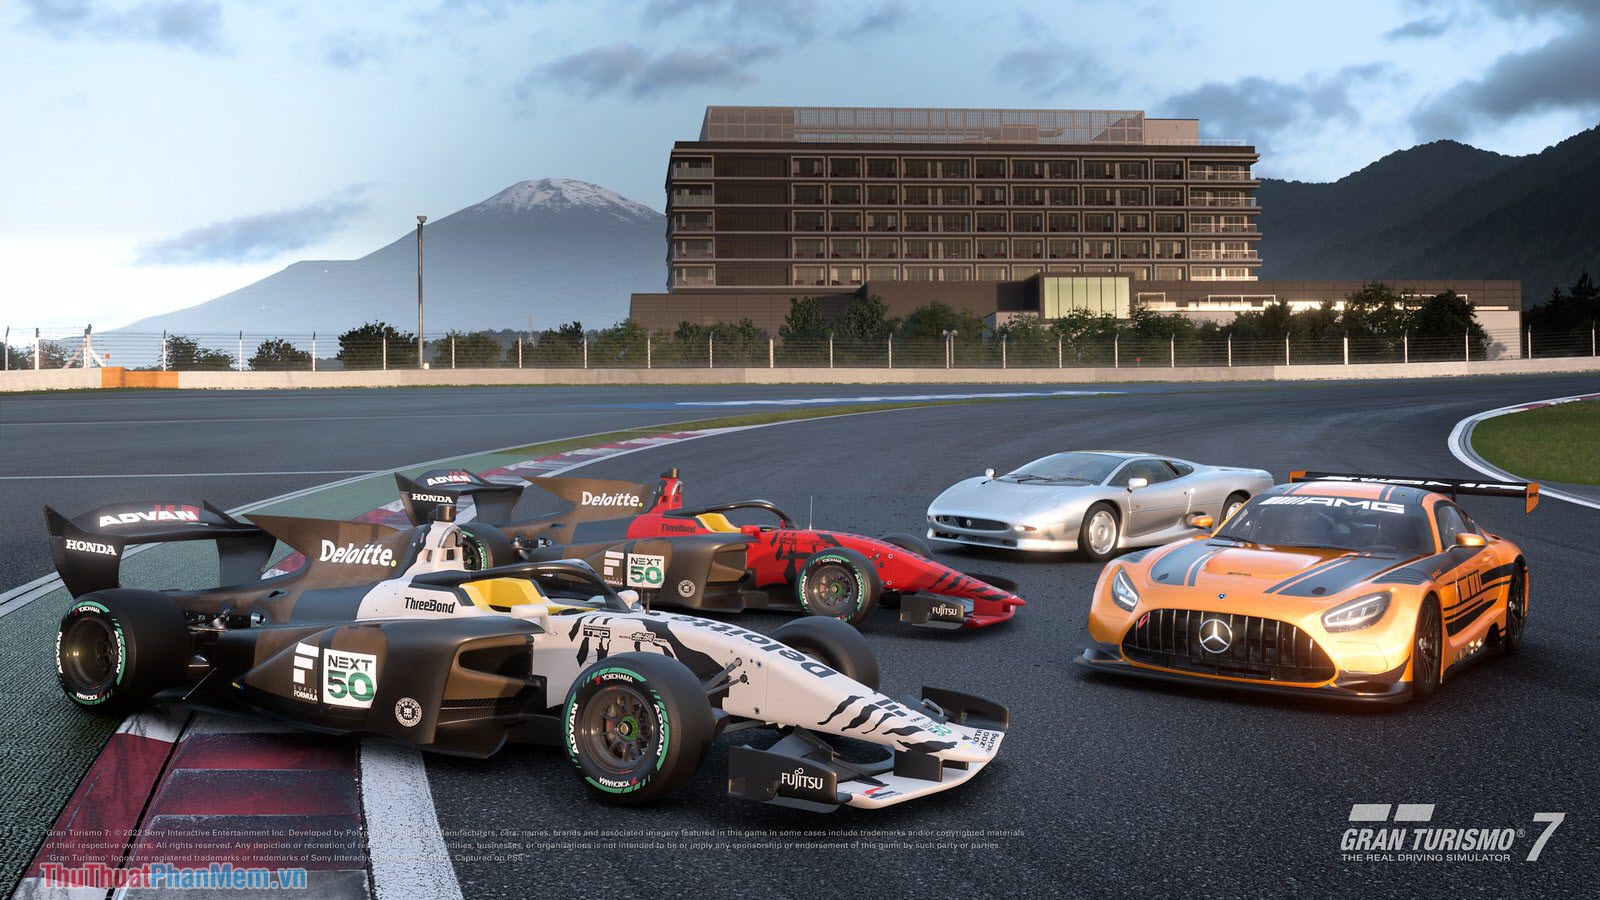 Gran Turismo 7 – Game mô phỏng đua xe giả lập cực chất